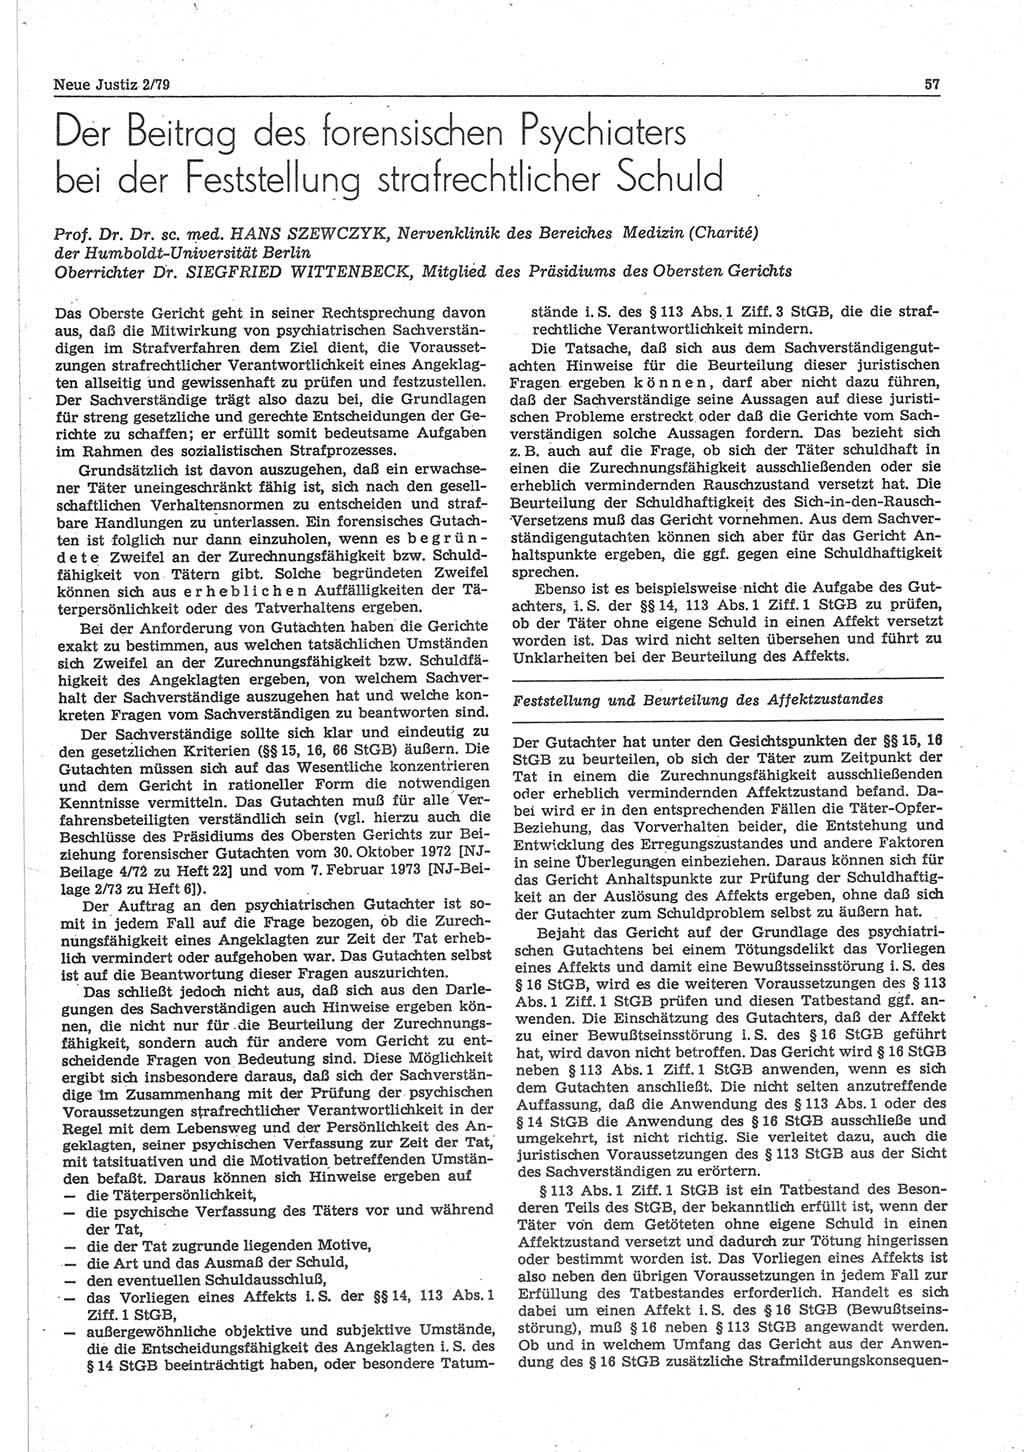 Neue Justiz (NJ), Zeitschrift für sozialistisches Recht und Gesetzlichkeit [Deutsche Demokratische Republik (DDR)], 33. Jahrgang 1979, Seite 57 (NJ DDR 1979, S. 57)